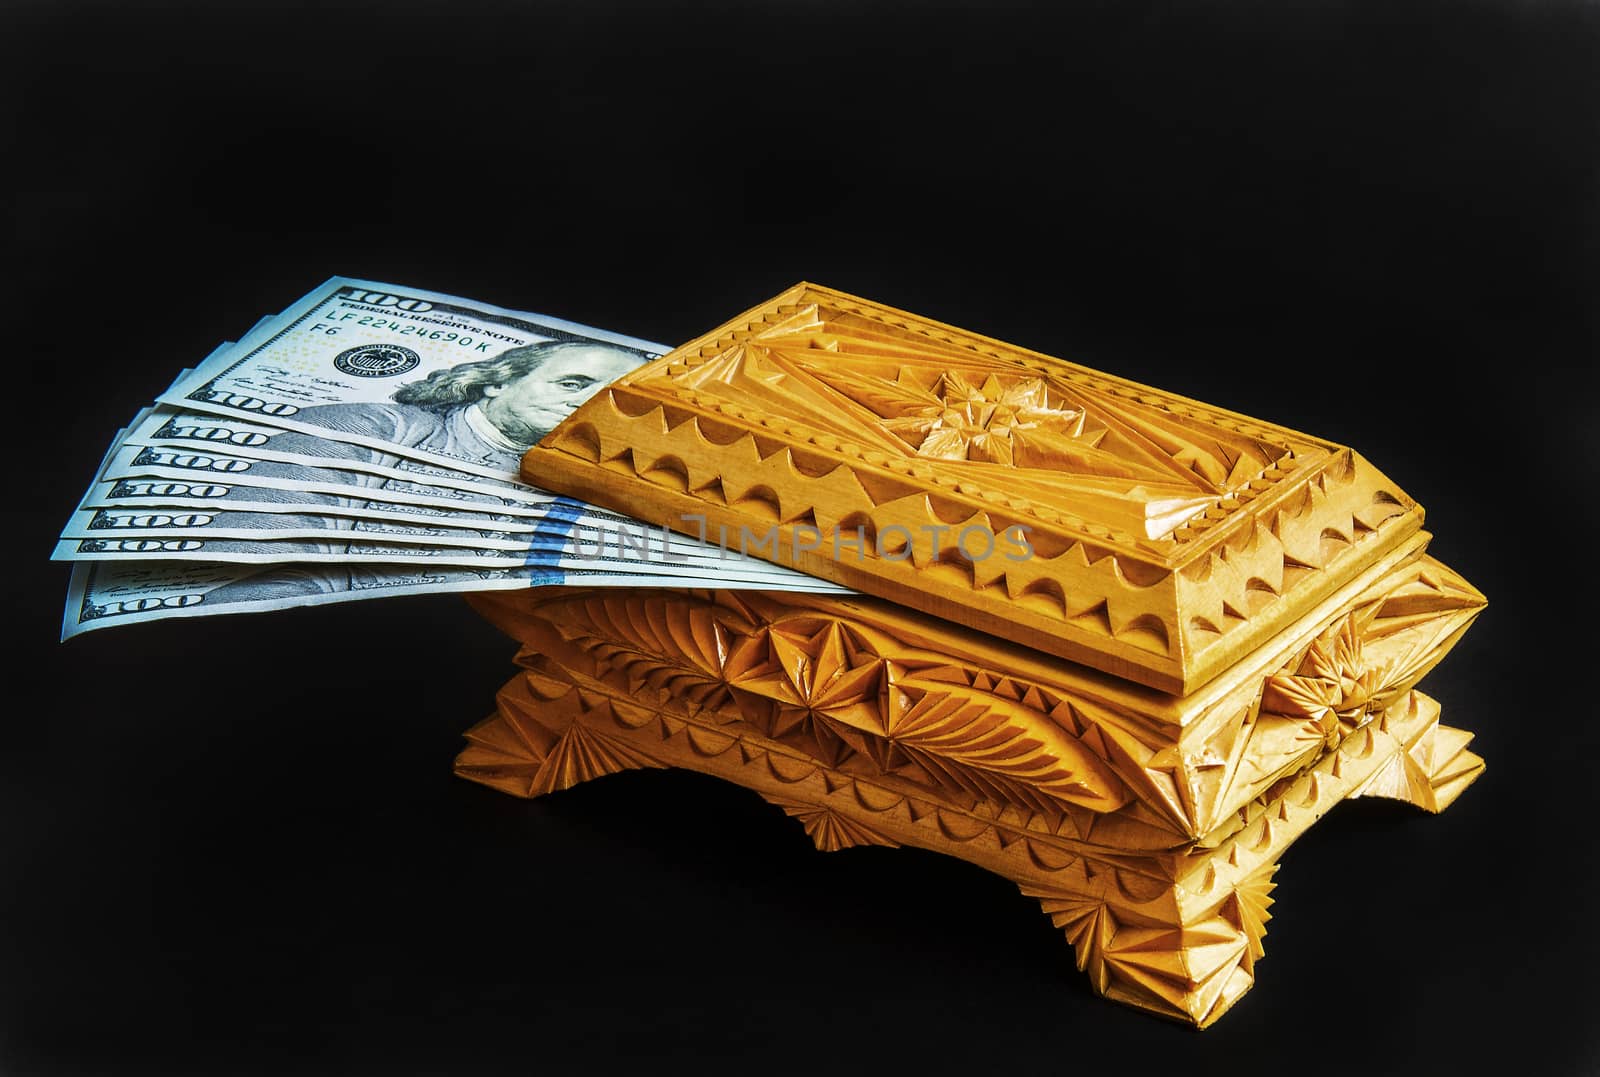 Wooden casket handmade for storing banknotes

